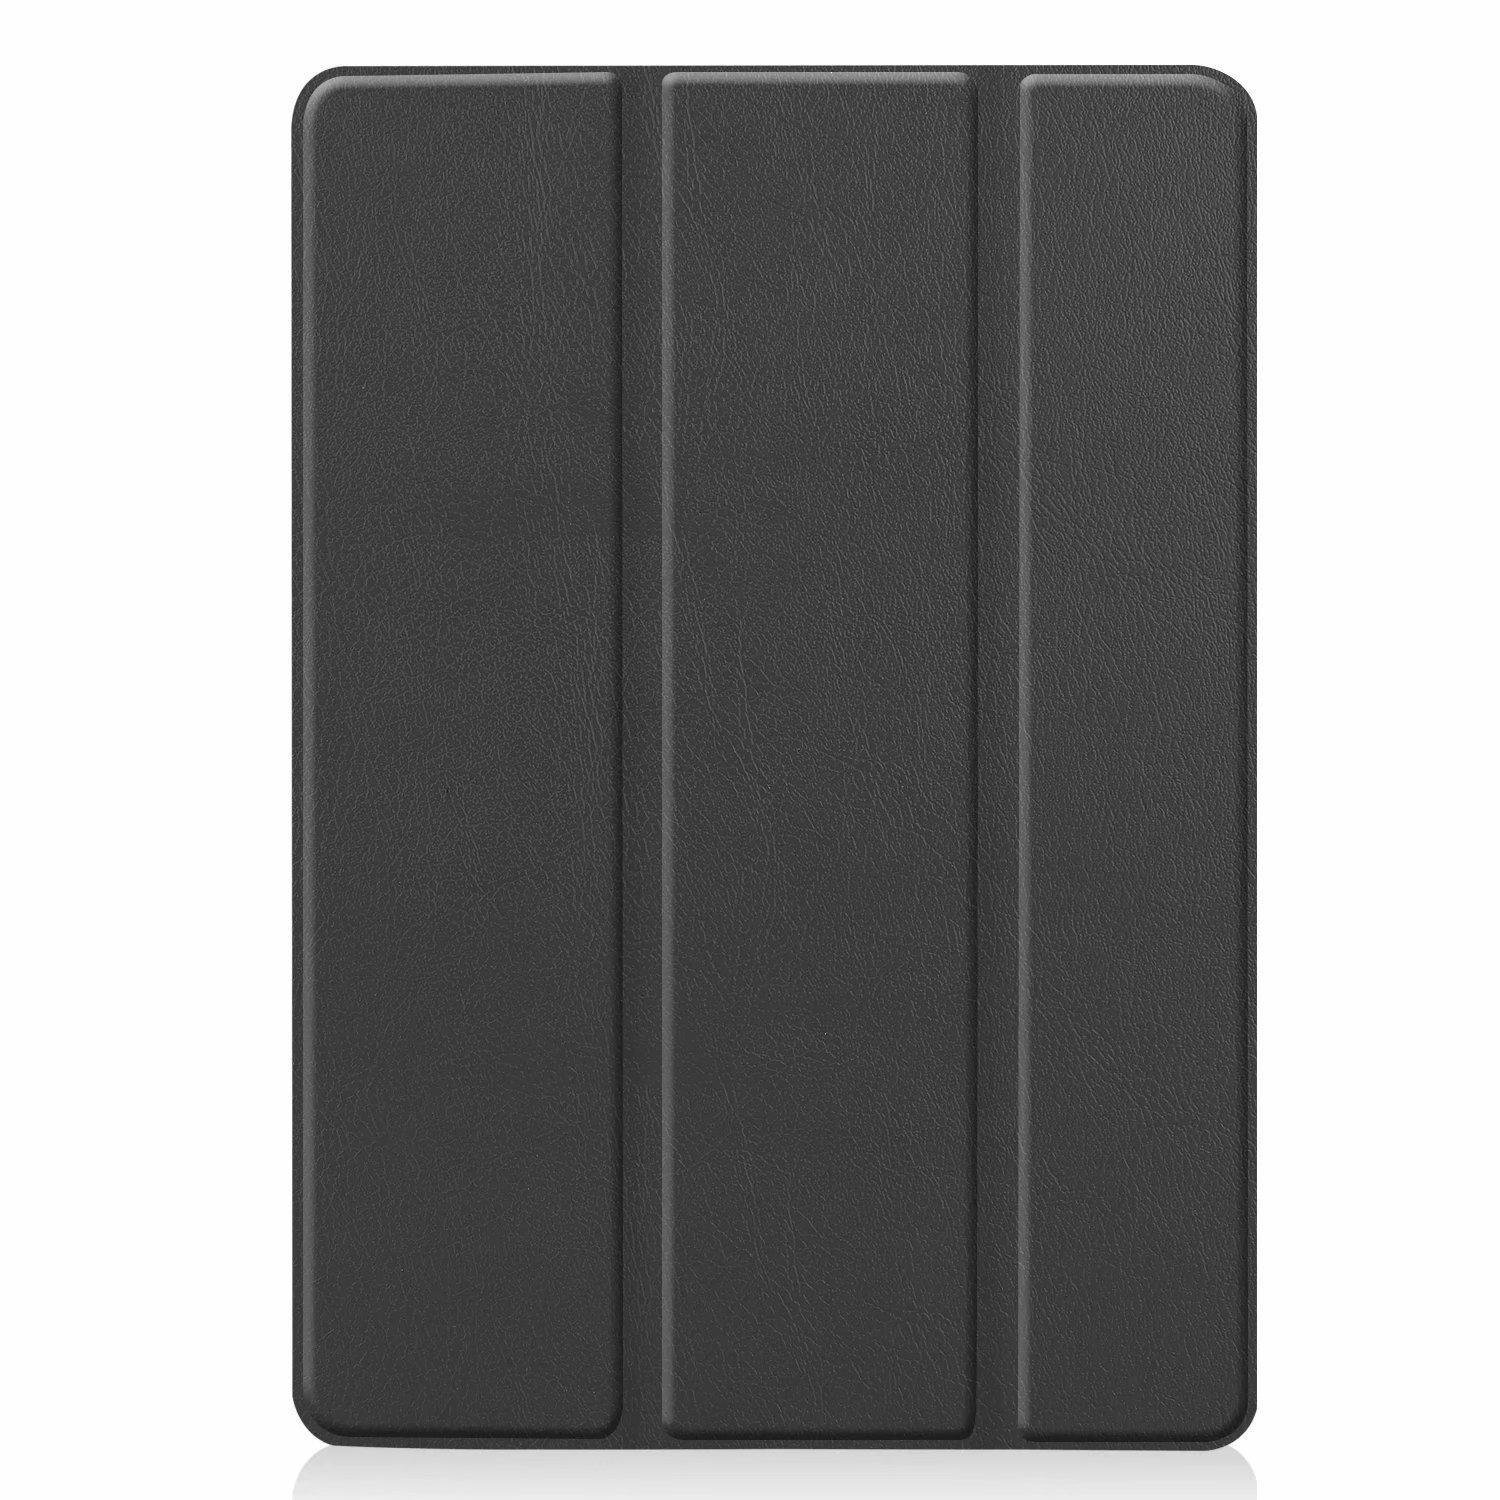 INF iPad TPU-Leder Cover Zoll 10.2/10.5 mit Case schwarz Cover für Tabletthülle Smart weichem Mikrofaser-Futter, Apple iPad-Hülle Flip